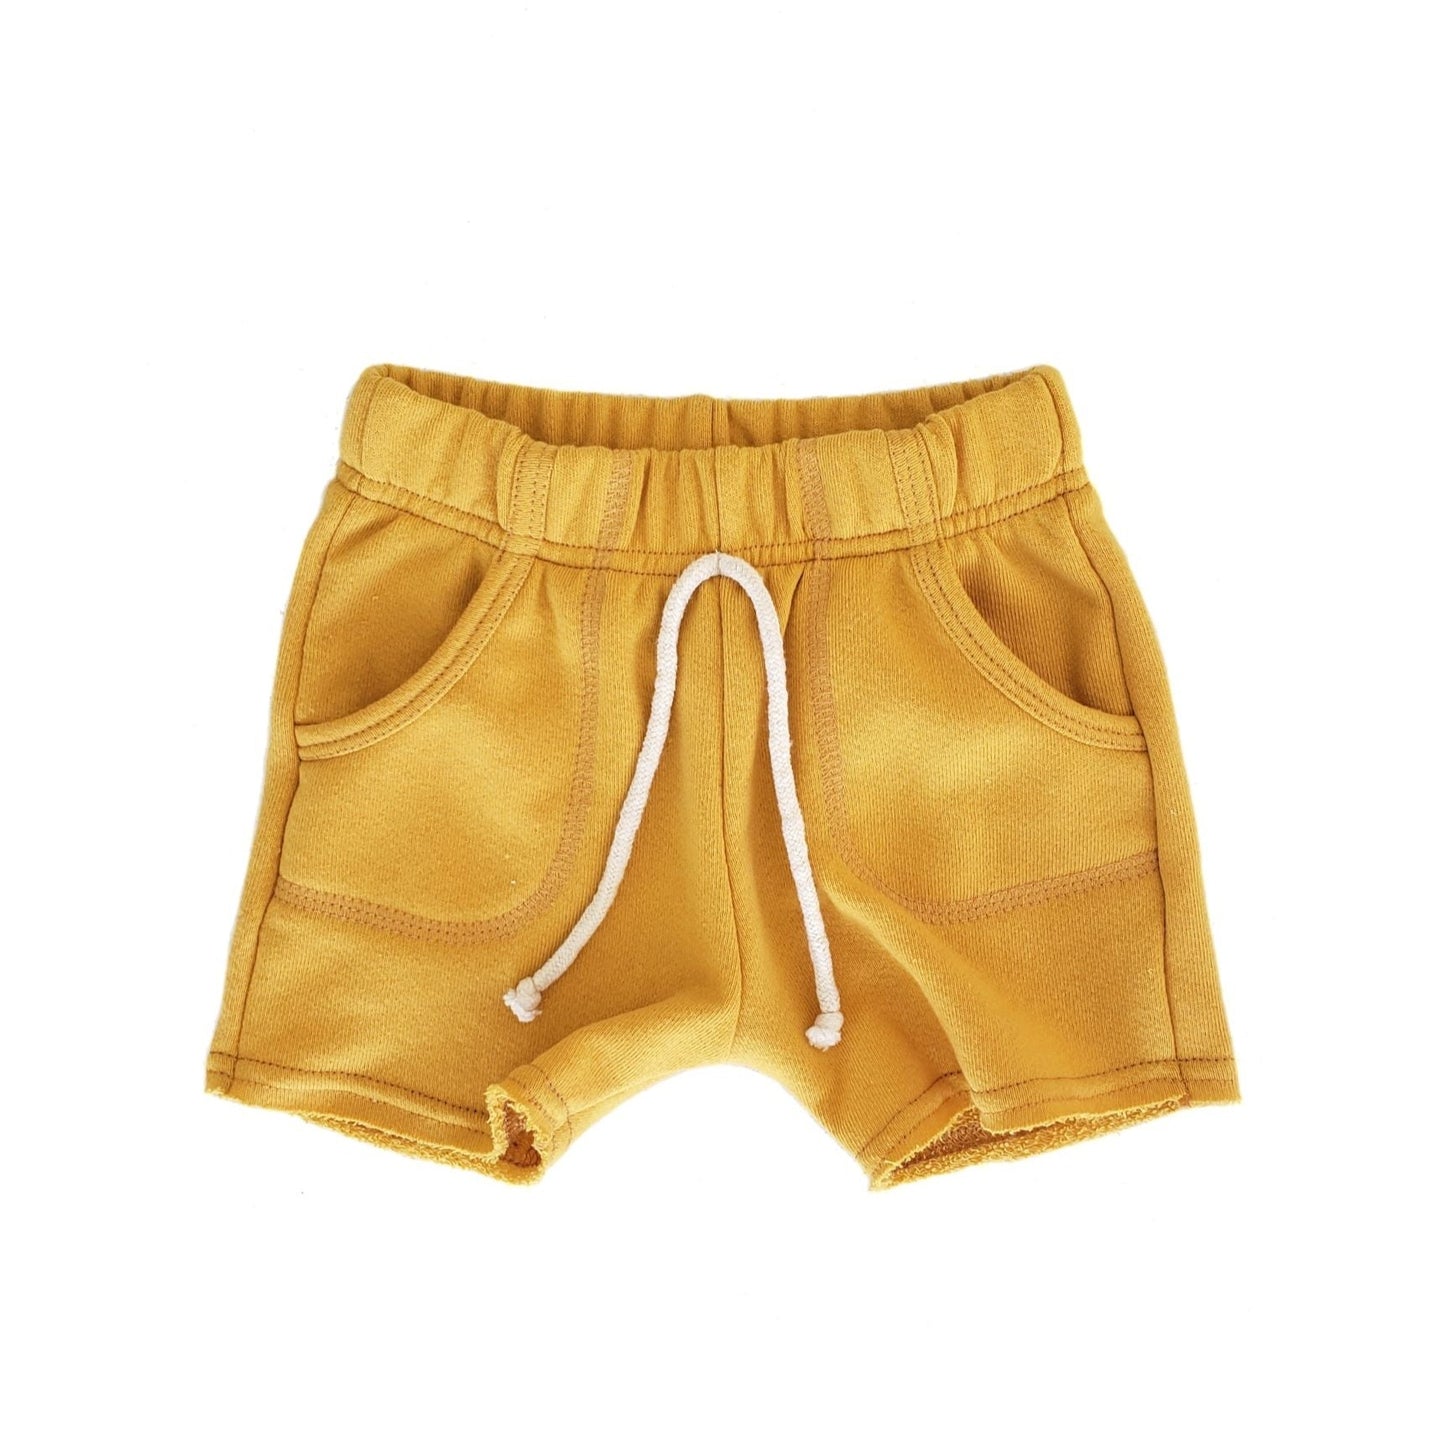 sk8 shorts - sunflower